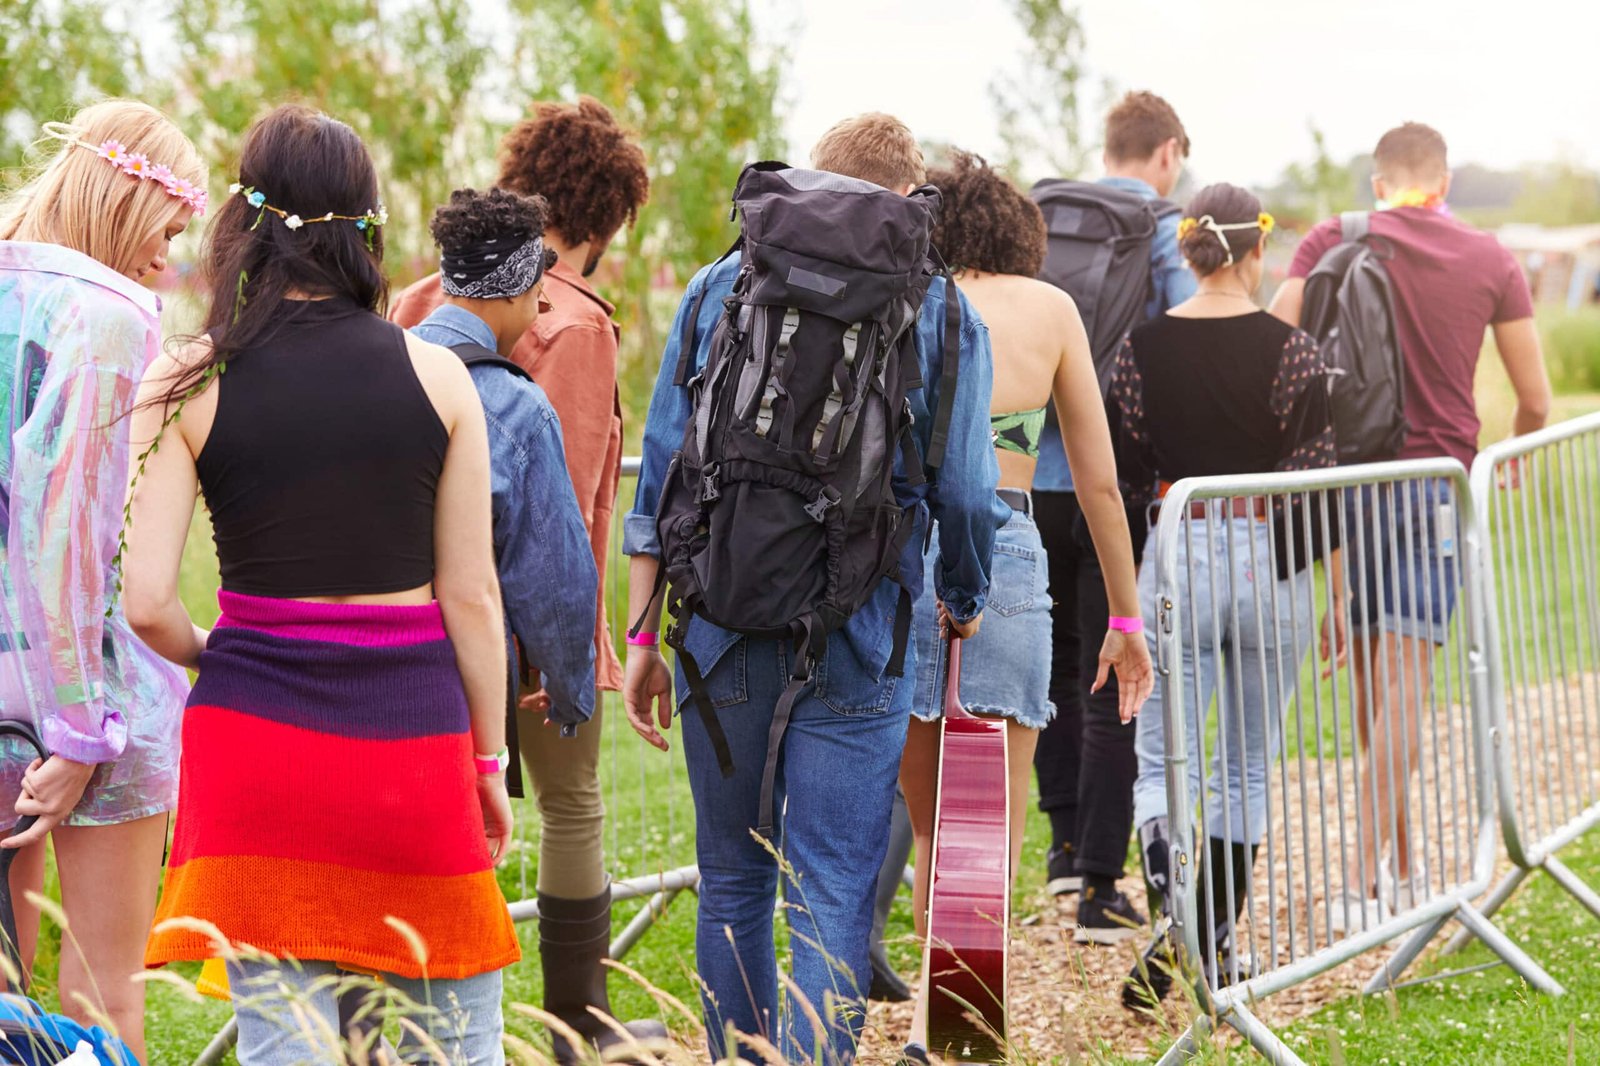 Menschen betreten das Musikfestival und gehen durch Sicherheitsbarrieren